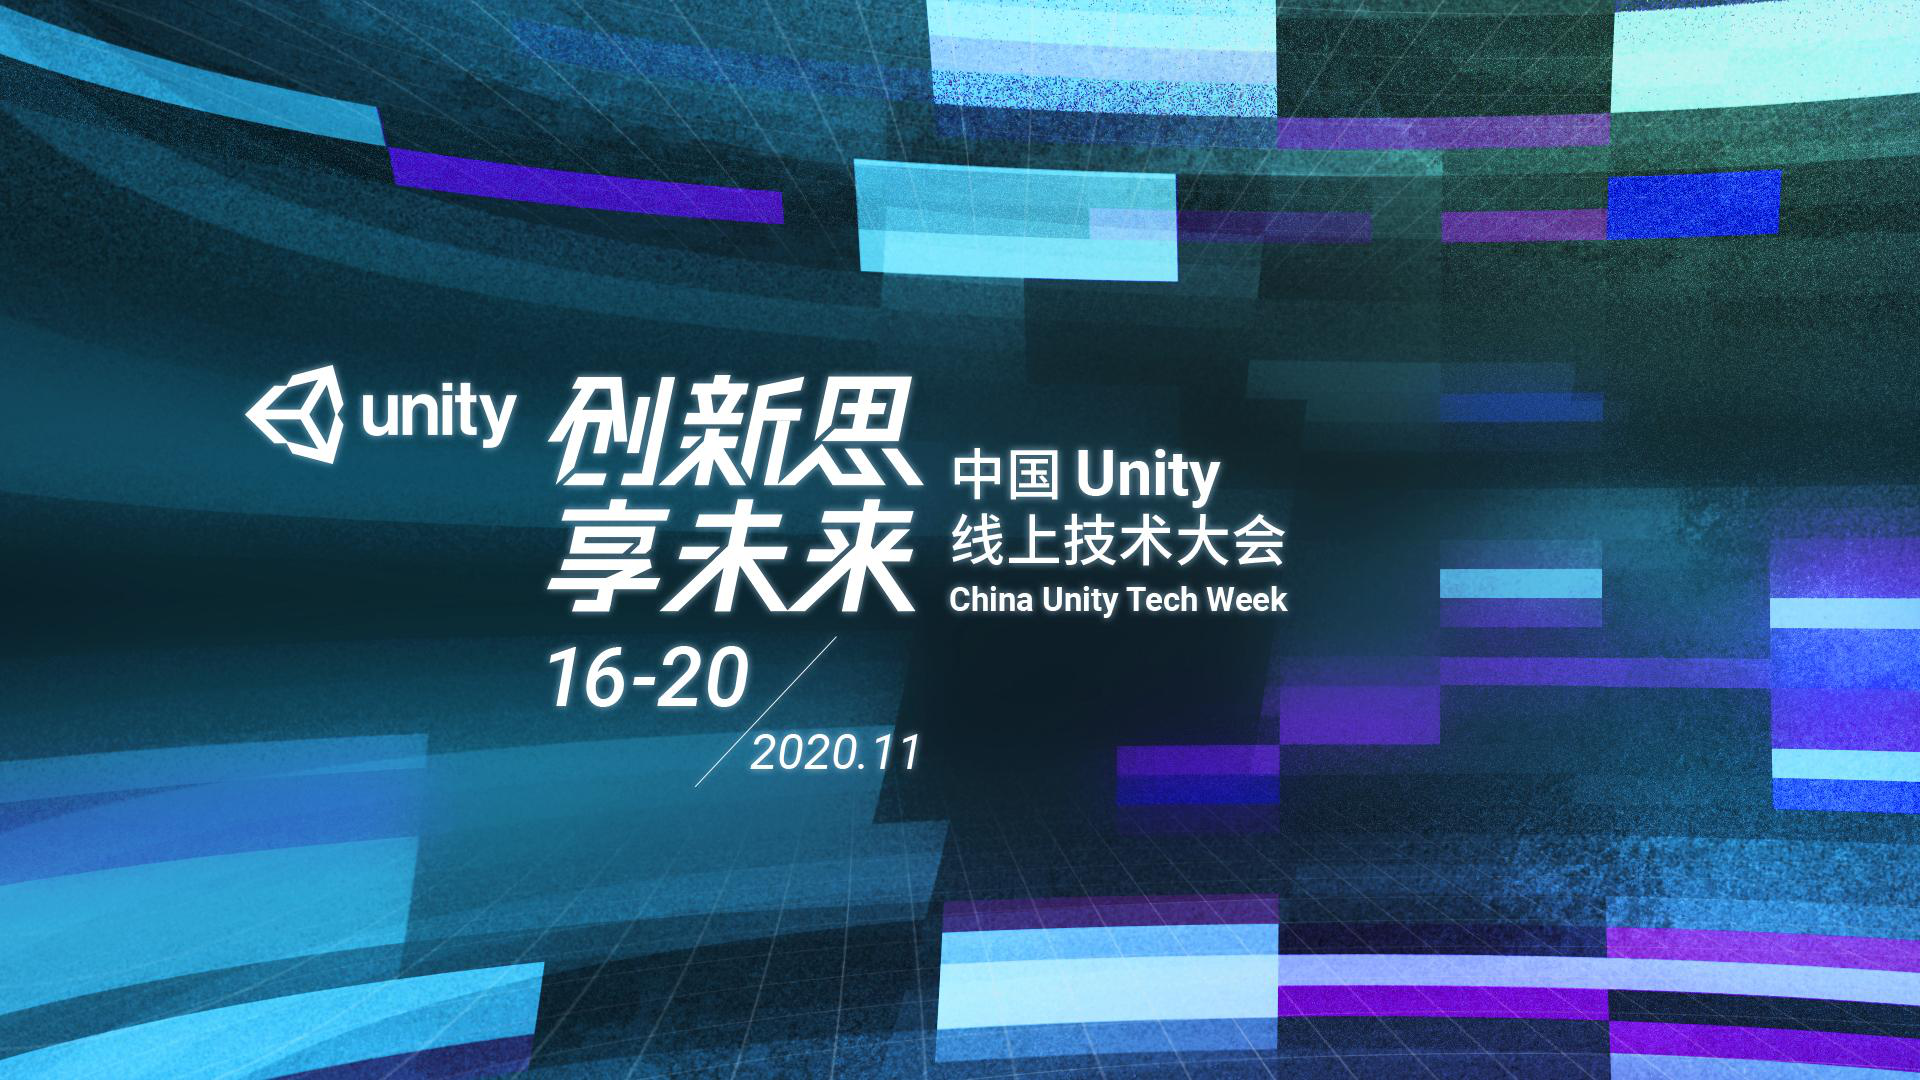 一文看尽Unity的“野心”：核心技术强升级、3D技术深度赋能工业场景、数字孪生带来新惊喜